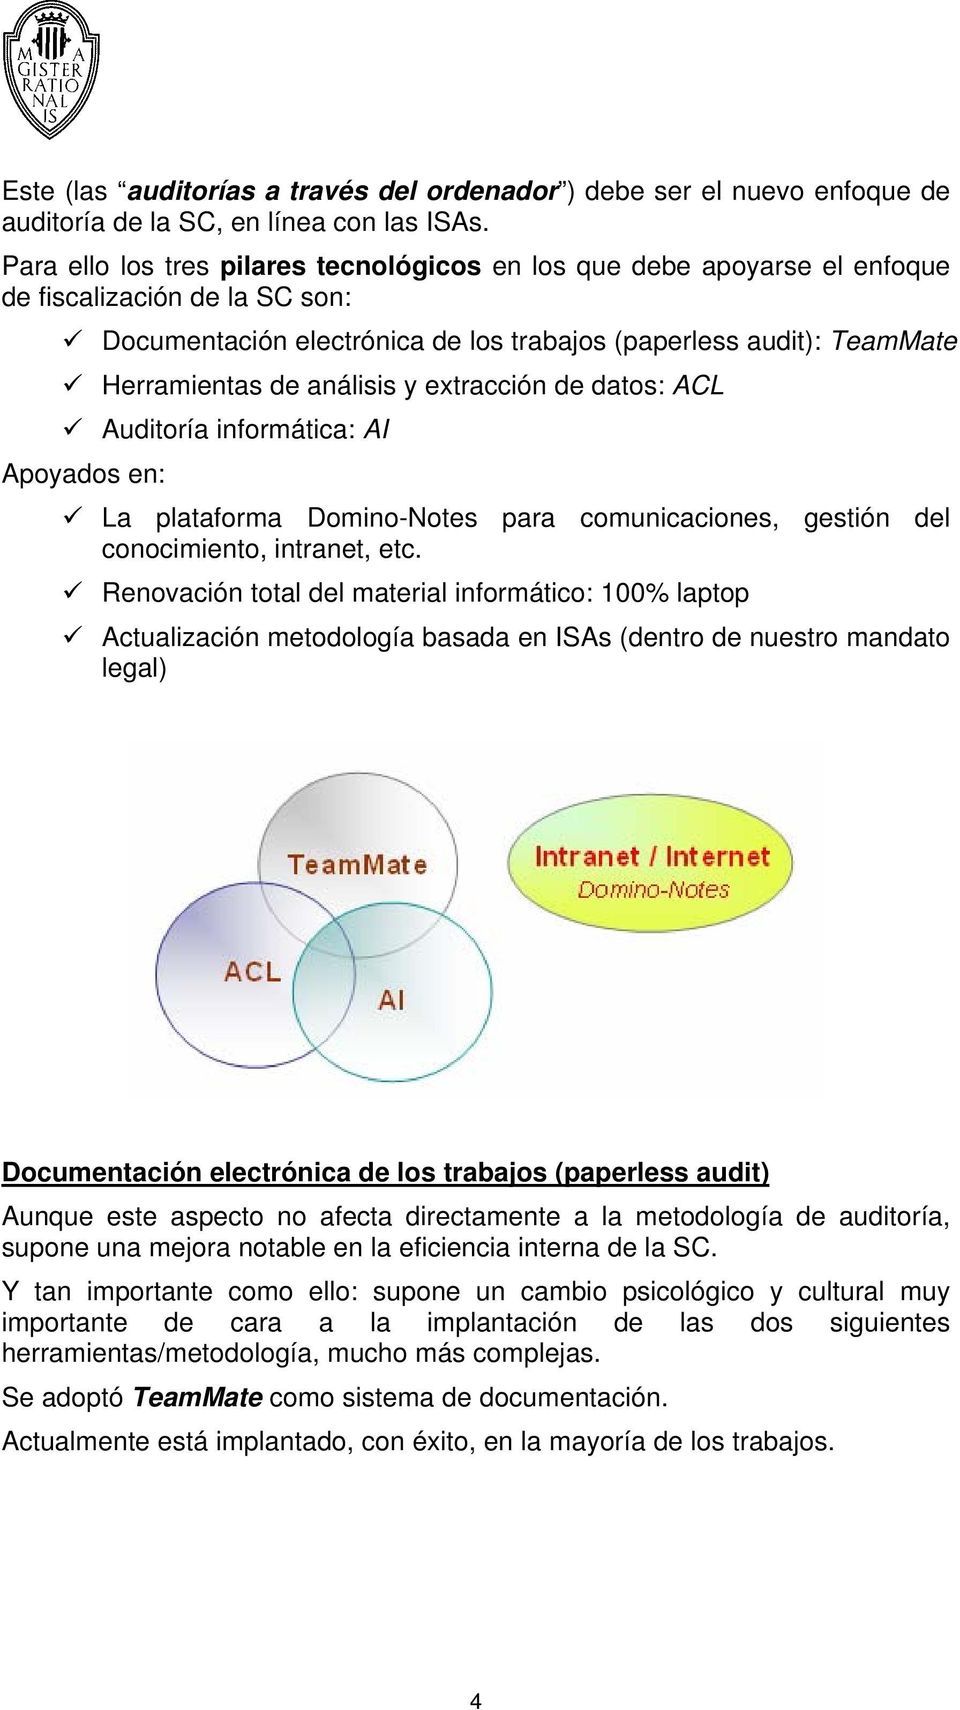 análisis y extracción de datos: ACL Auditoría informática: AI Apoyados en: La plataforma Domino-Notes para comunicaciones, gestión del conocimiento, intranet, etc.